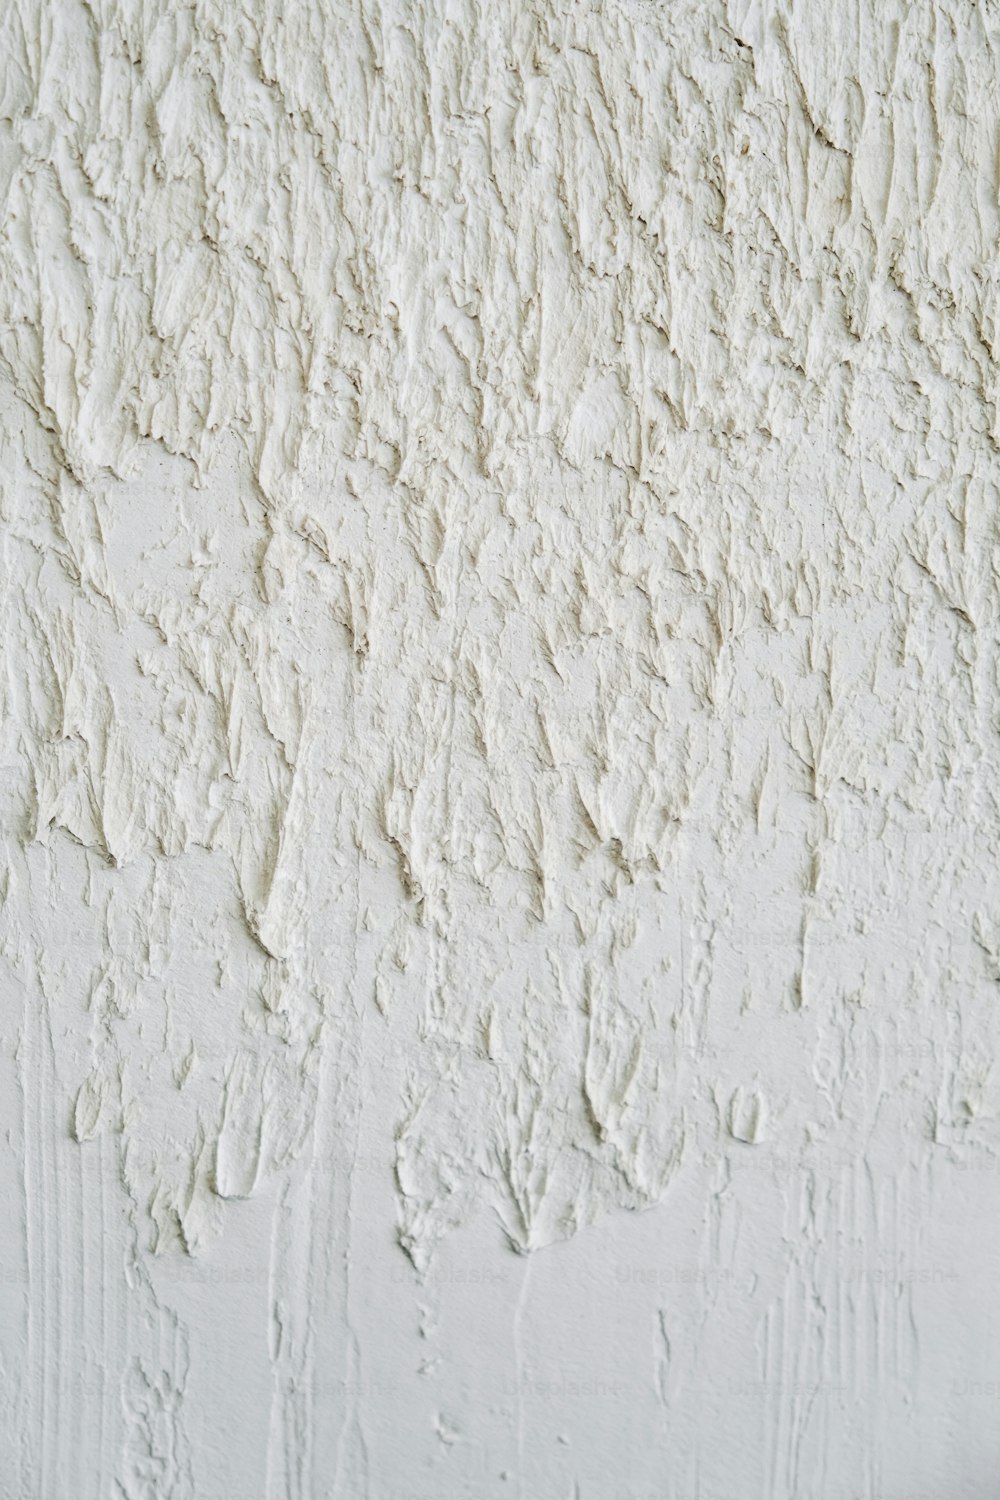 um close up de uma parede com tinta branca